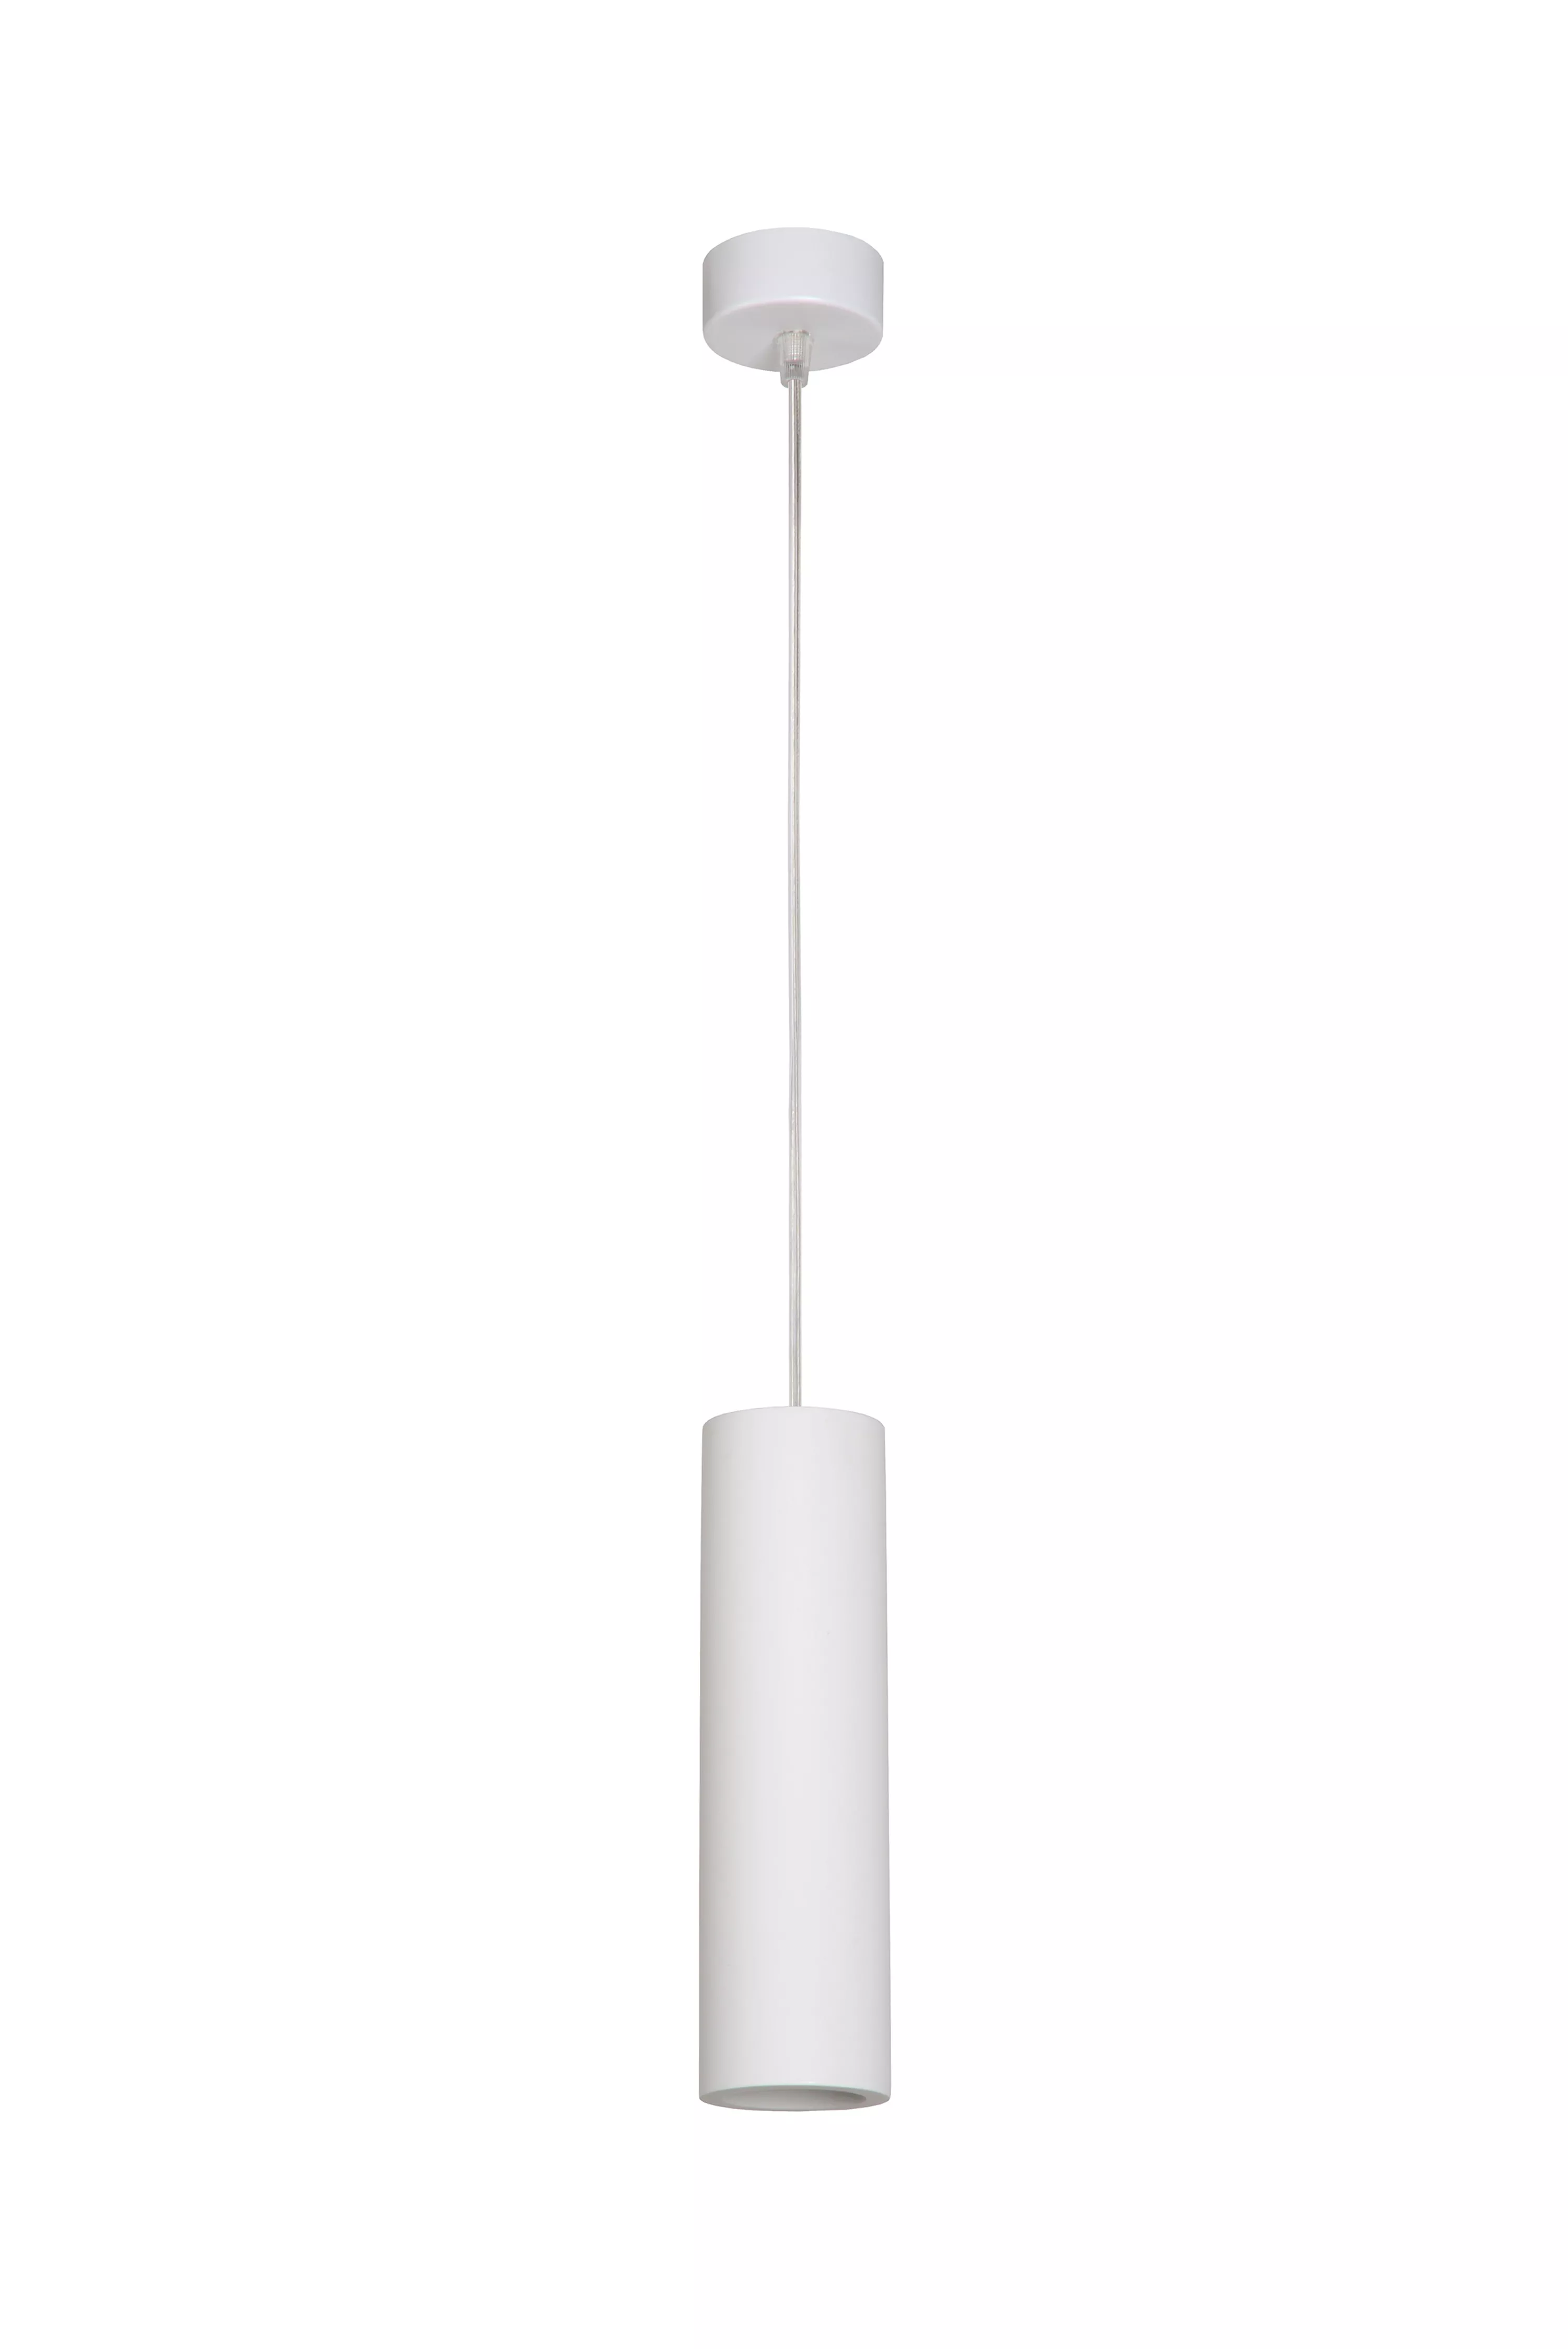 Jednoduché závesné svietidlo Gipsy v bielej farbe a podlhovastom tvare s nastaviteľnou dĺžkou kábla.